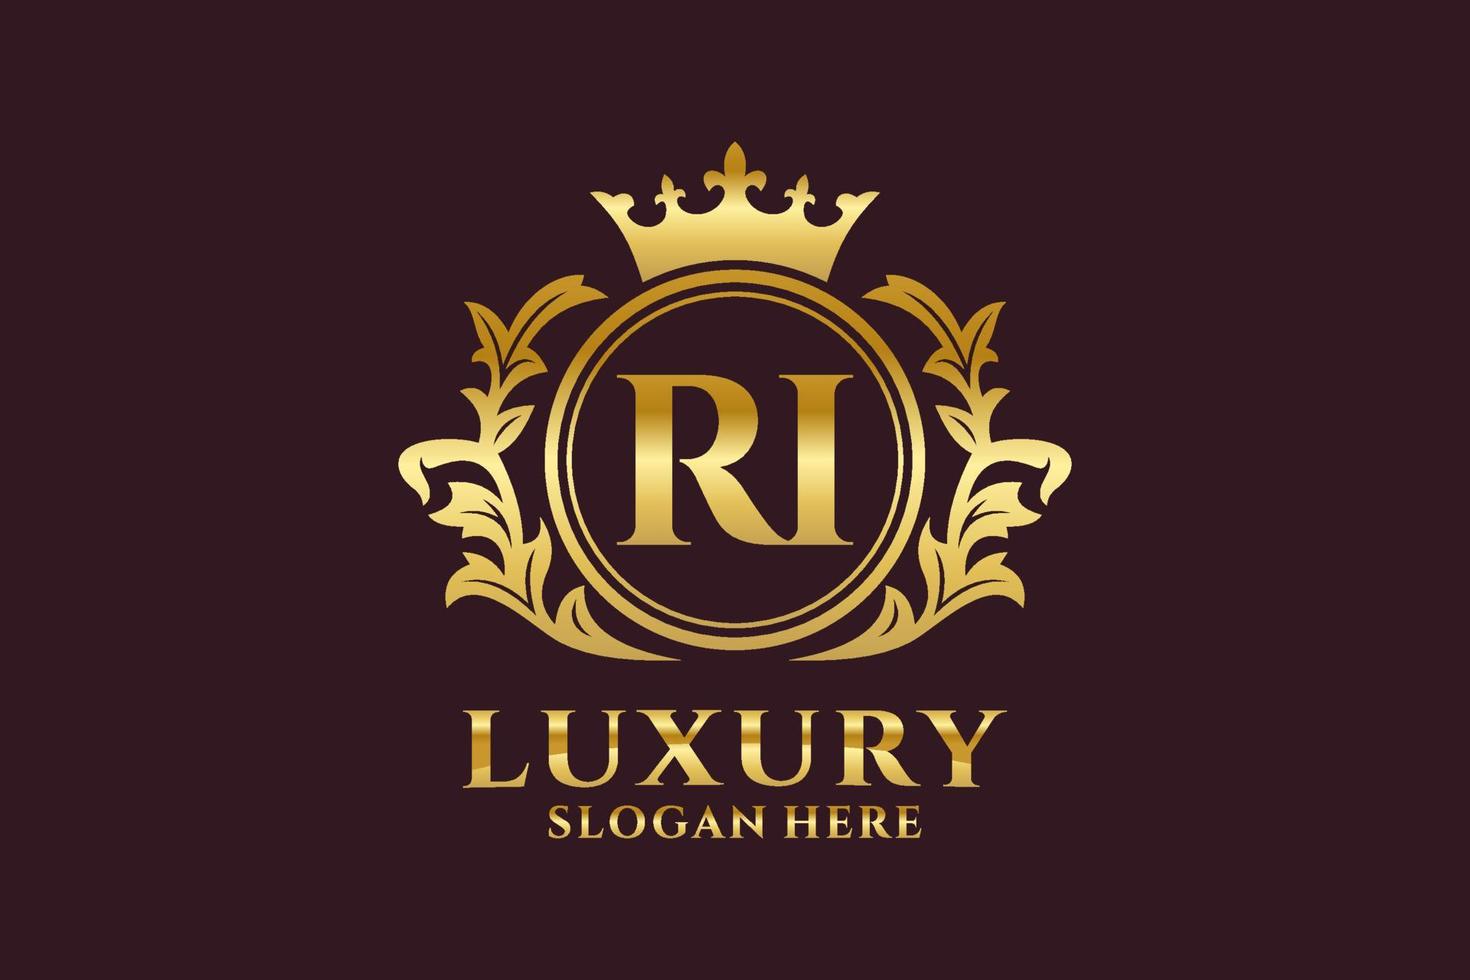 Royal Luxury Logo-Vorlage mit anfänglichem ri-Buchstaben in Vektorgrafiken für luxuriöse Branding-Projekte und andere Vektorillustrationen. vektor